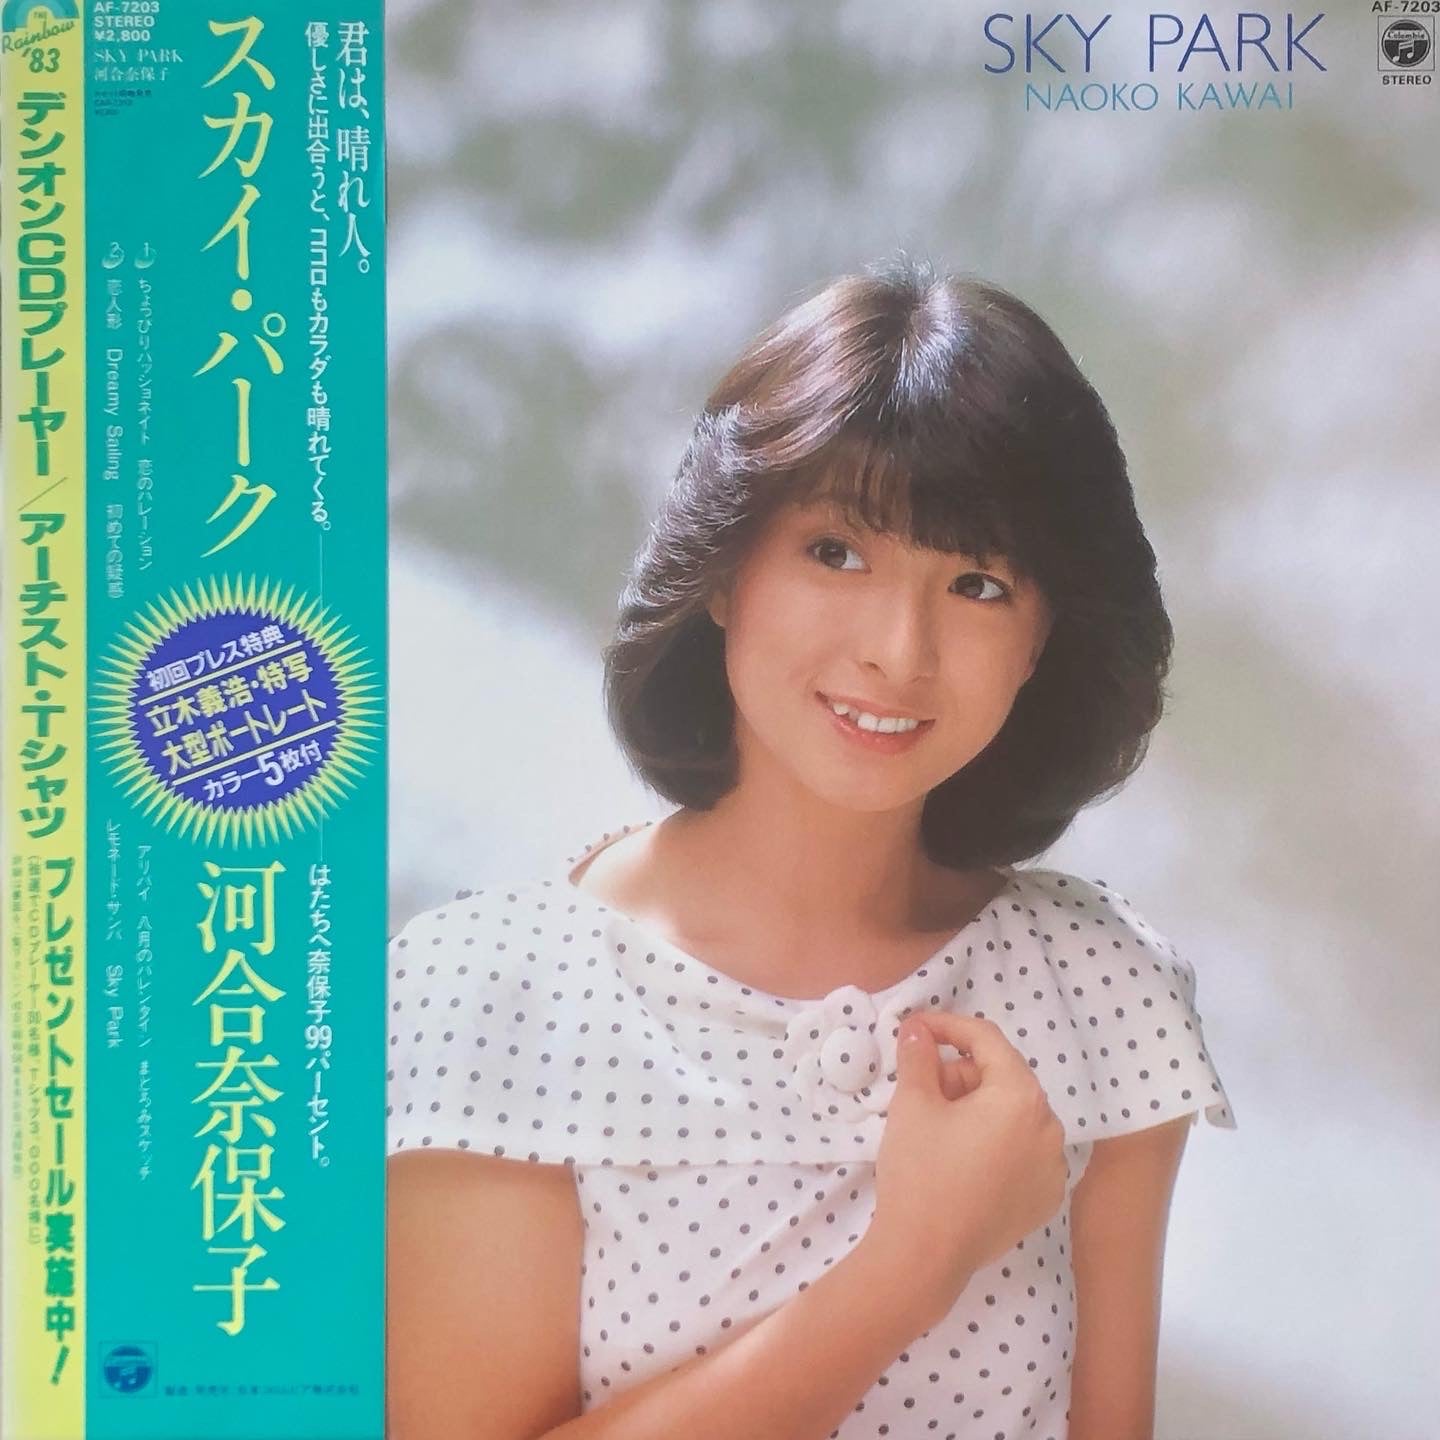 Naoko Kawai - Sky Park